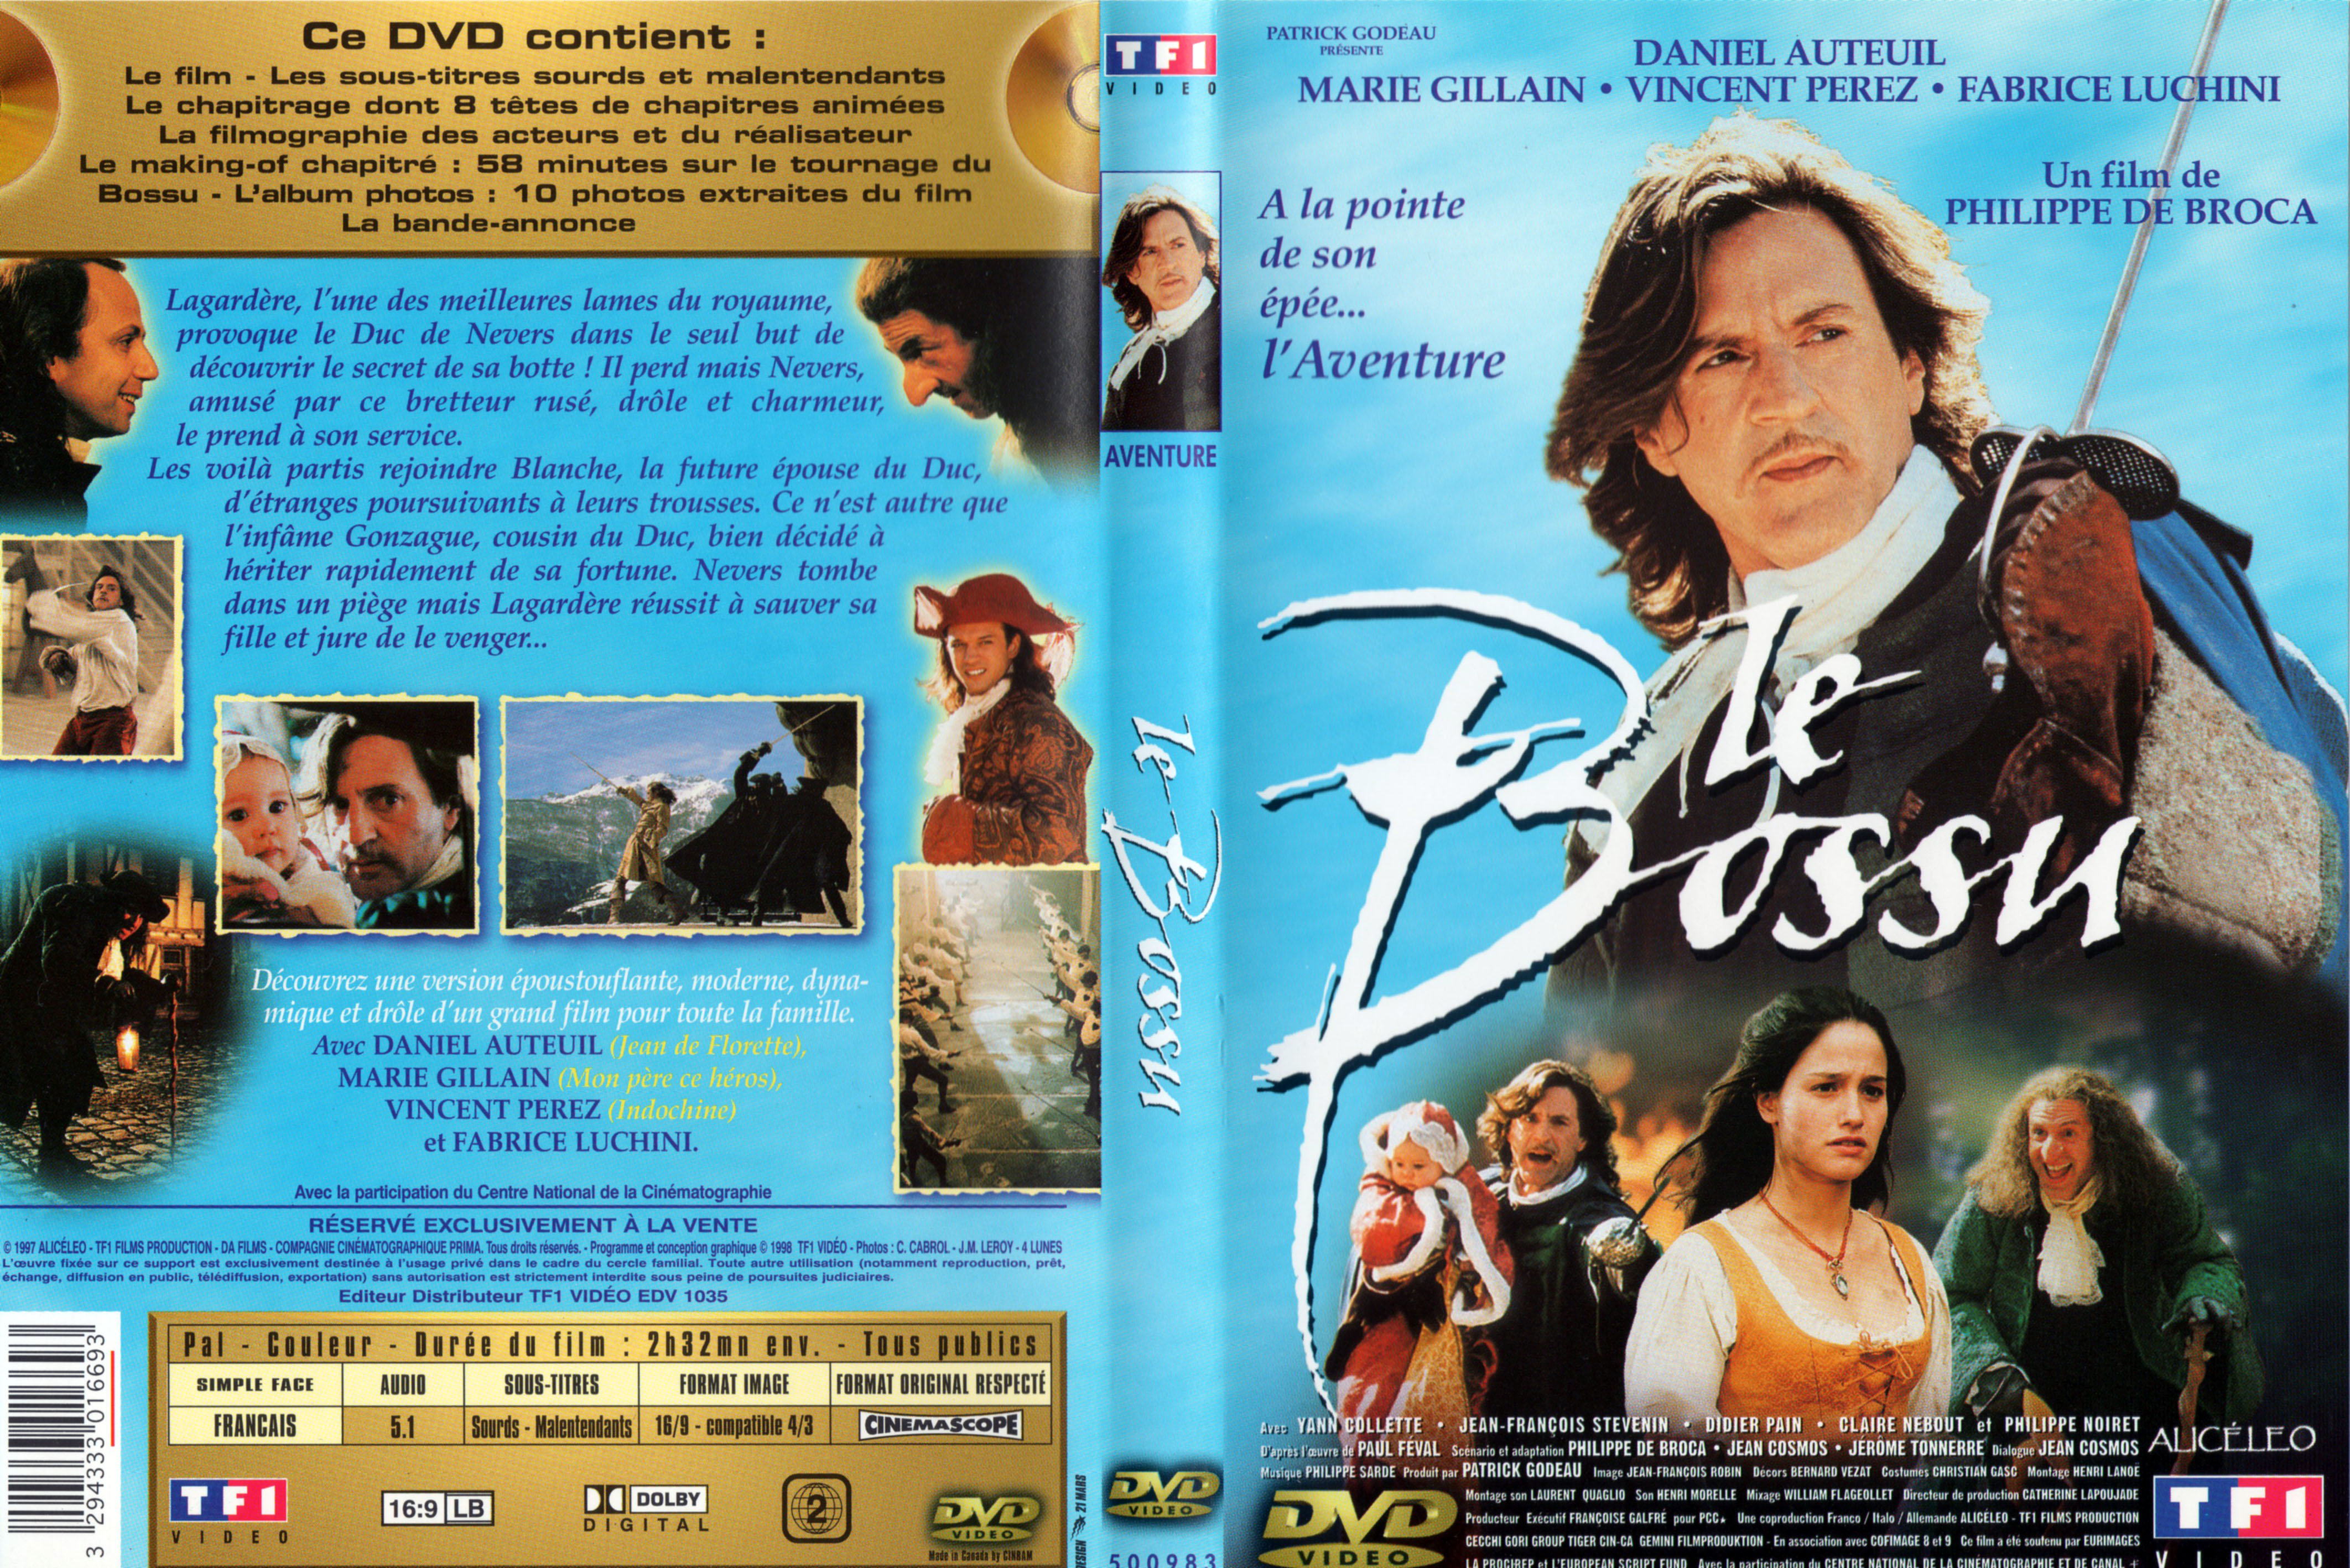 Jaquette DVD Le bossu (Daniel Auteuil) v2